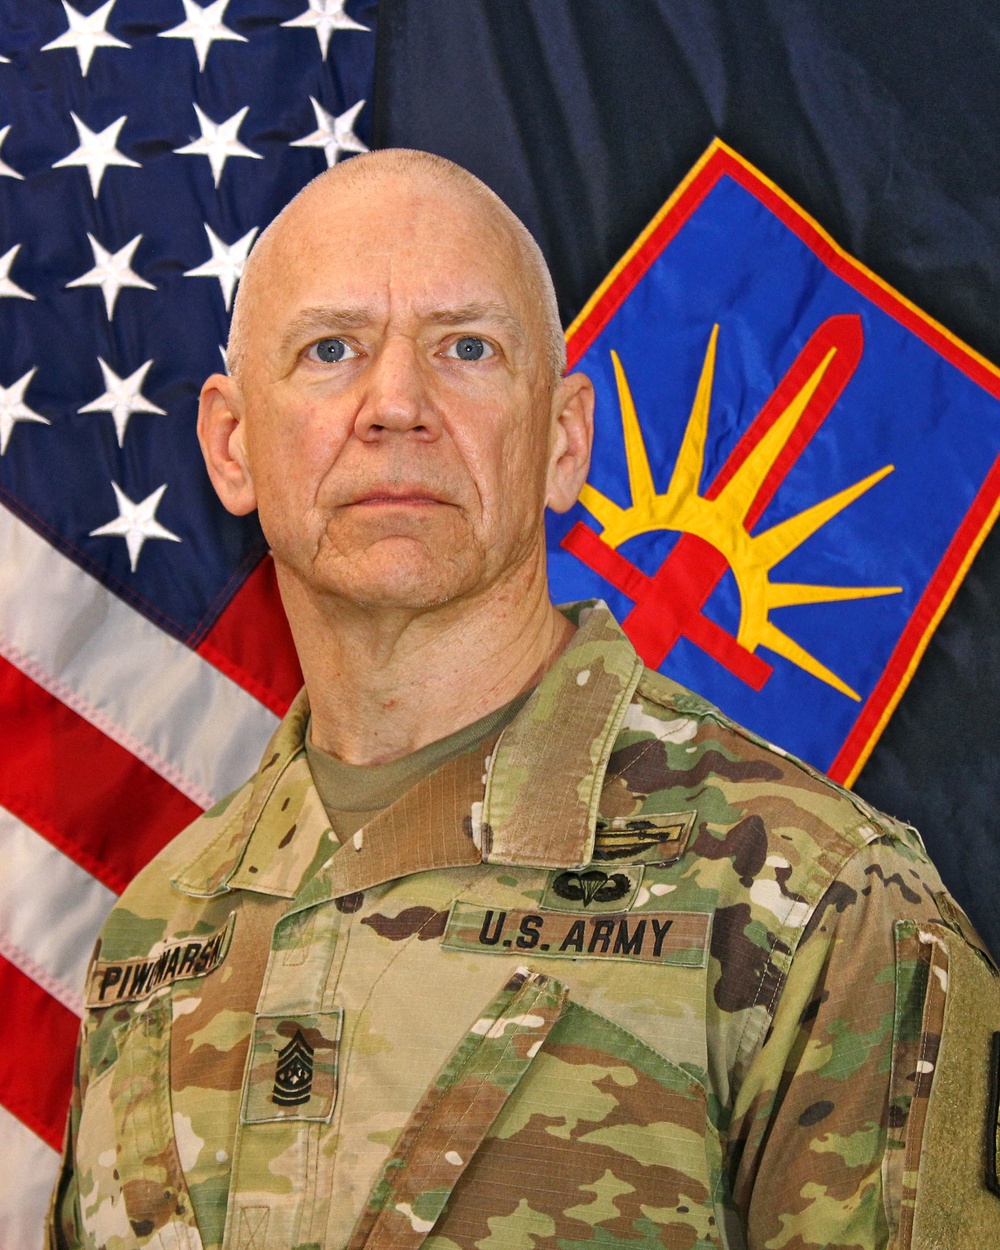 Command Sgt. Major David Piwowarski